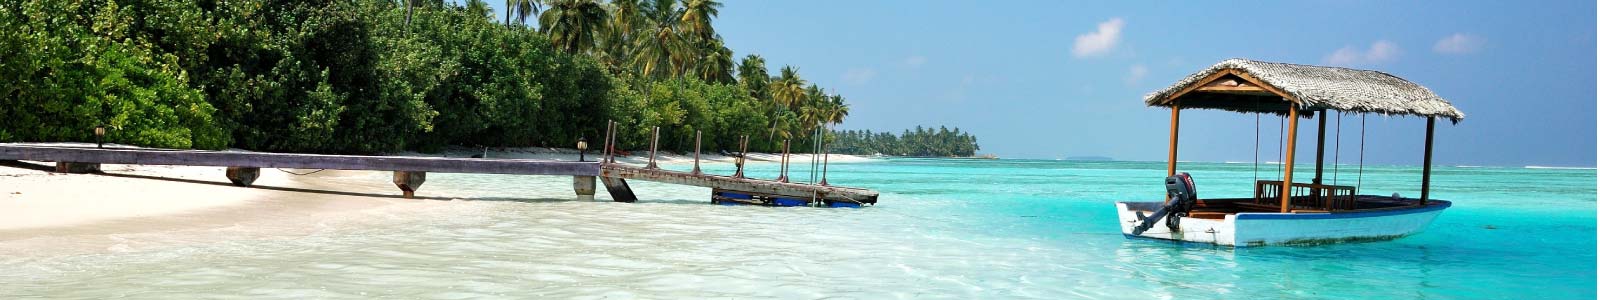 تور مالدیو تابستان